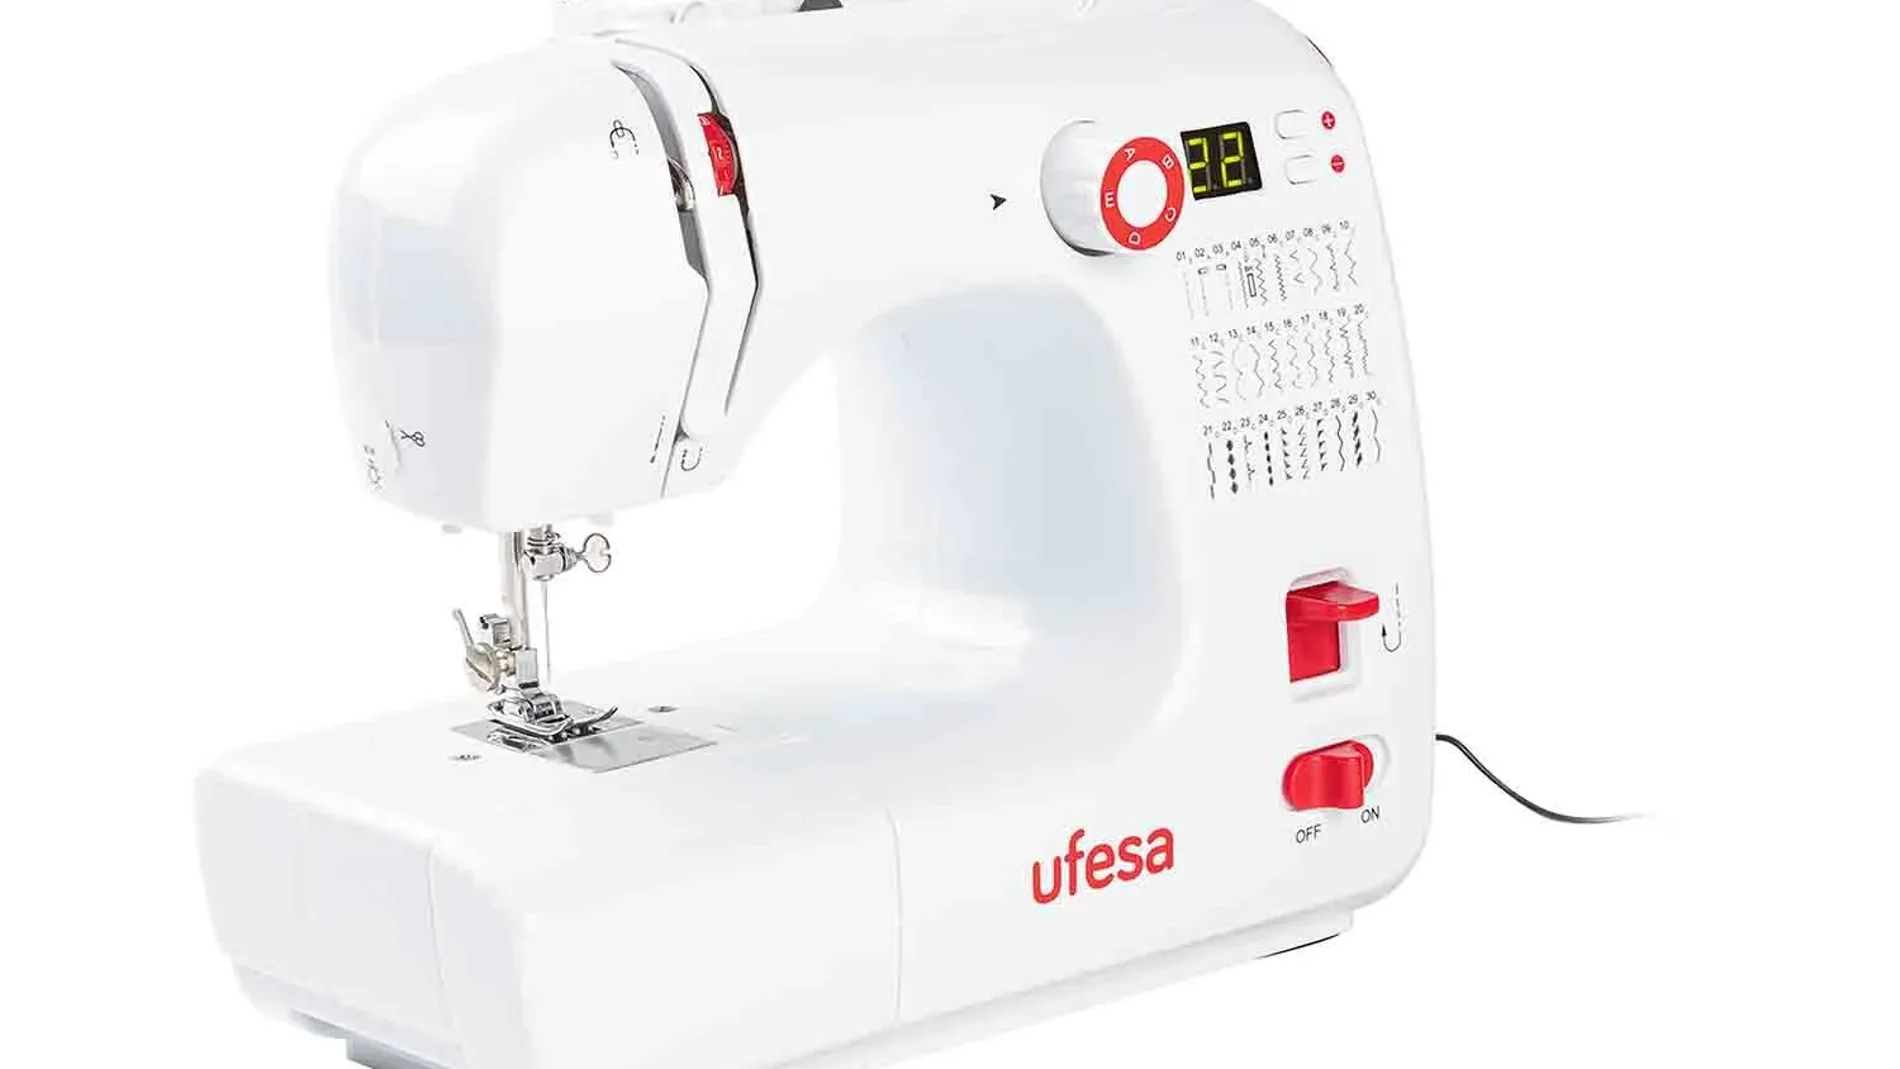 Las mejores ofertas de Lidl en su promoción Aniversario, como esta máquina de coser rebajada